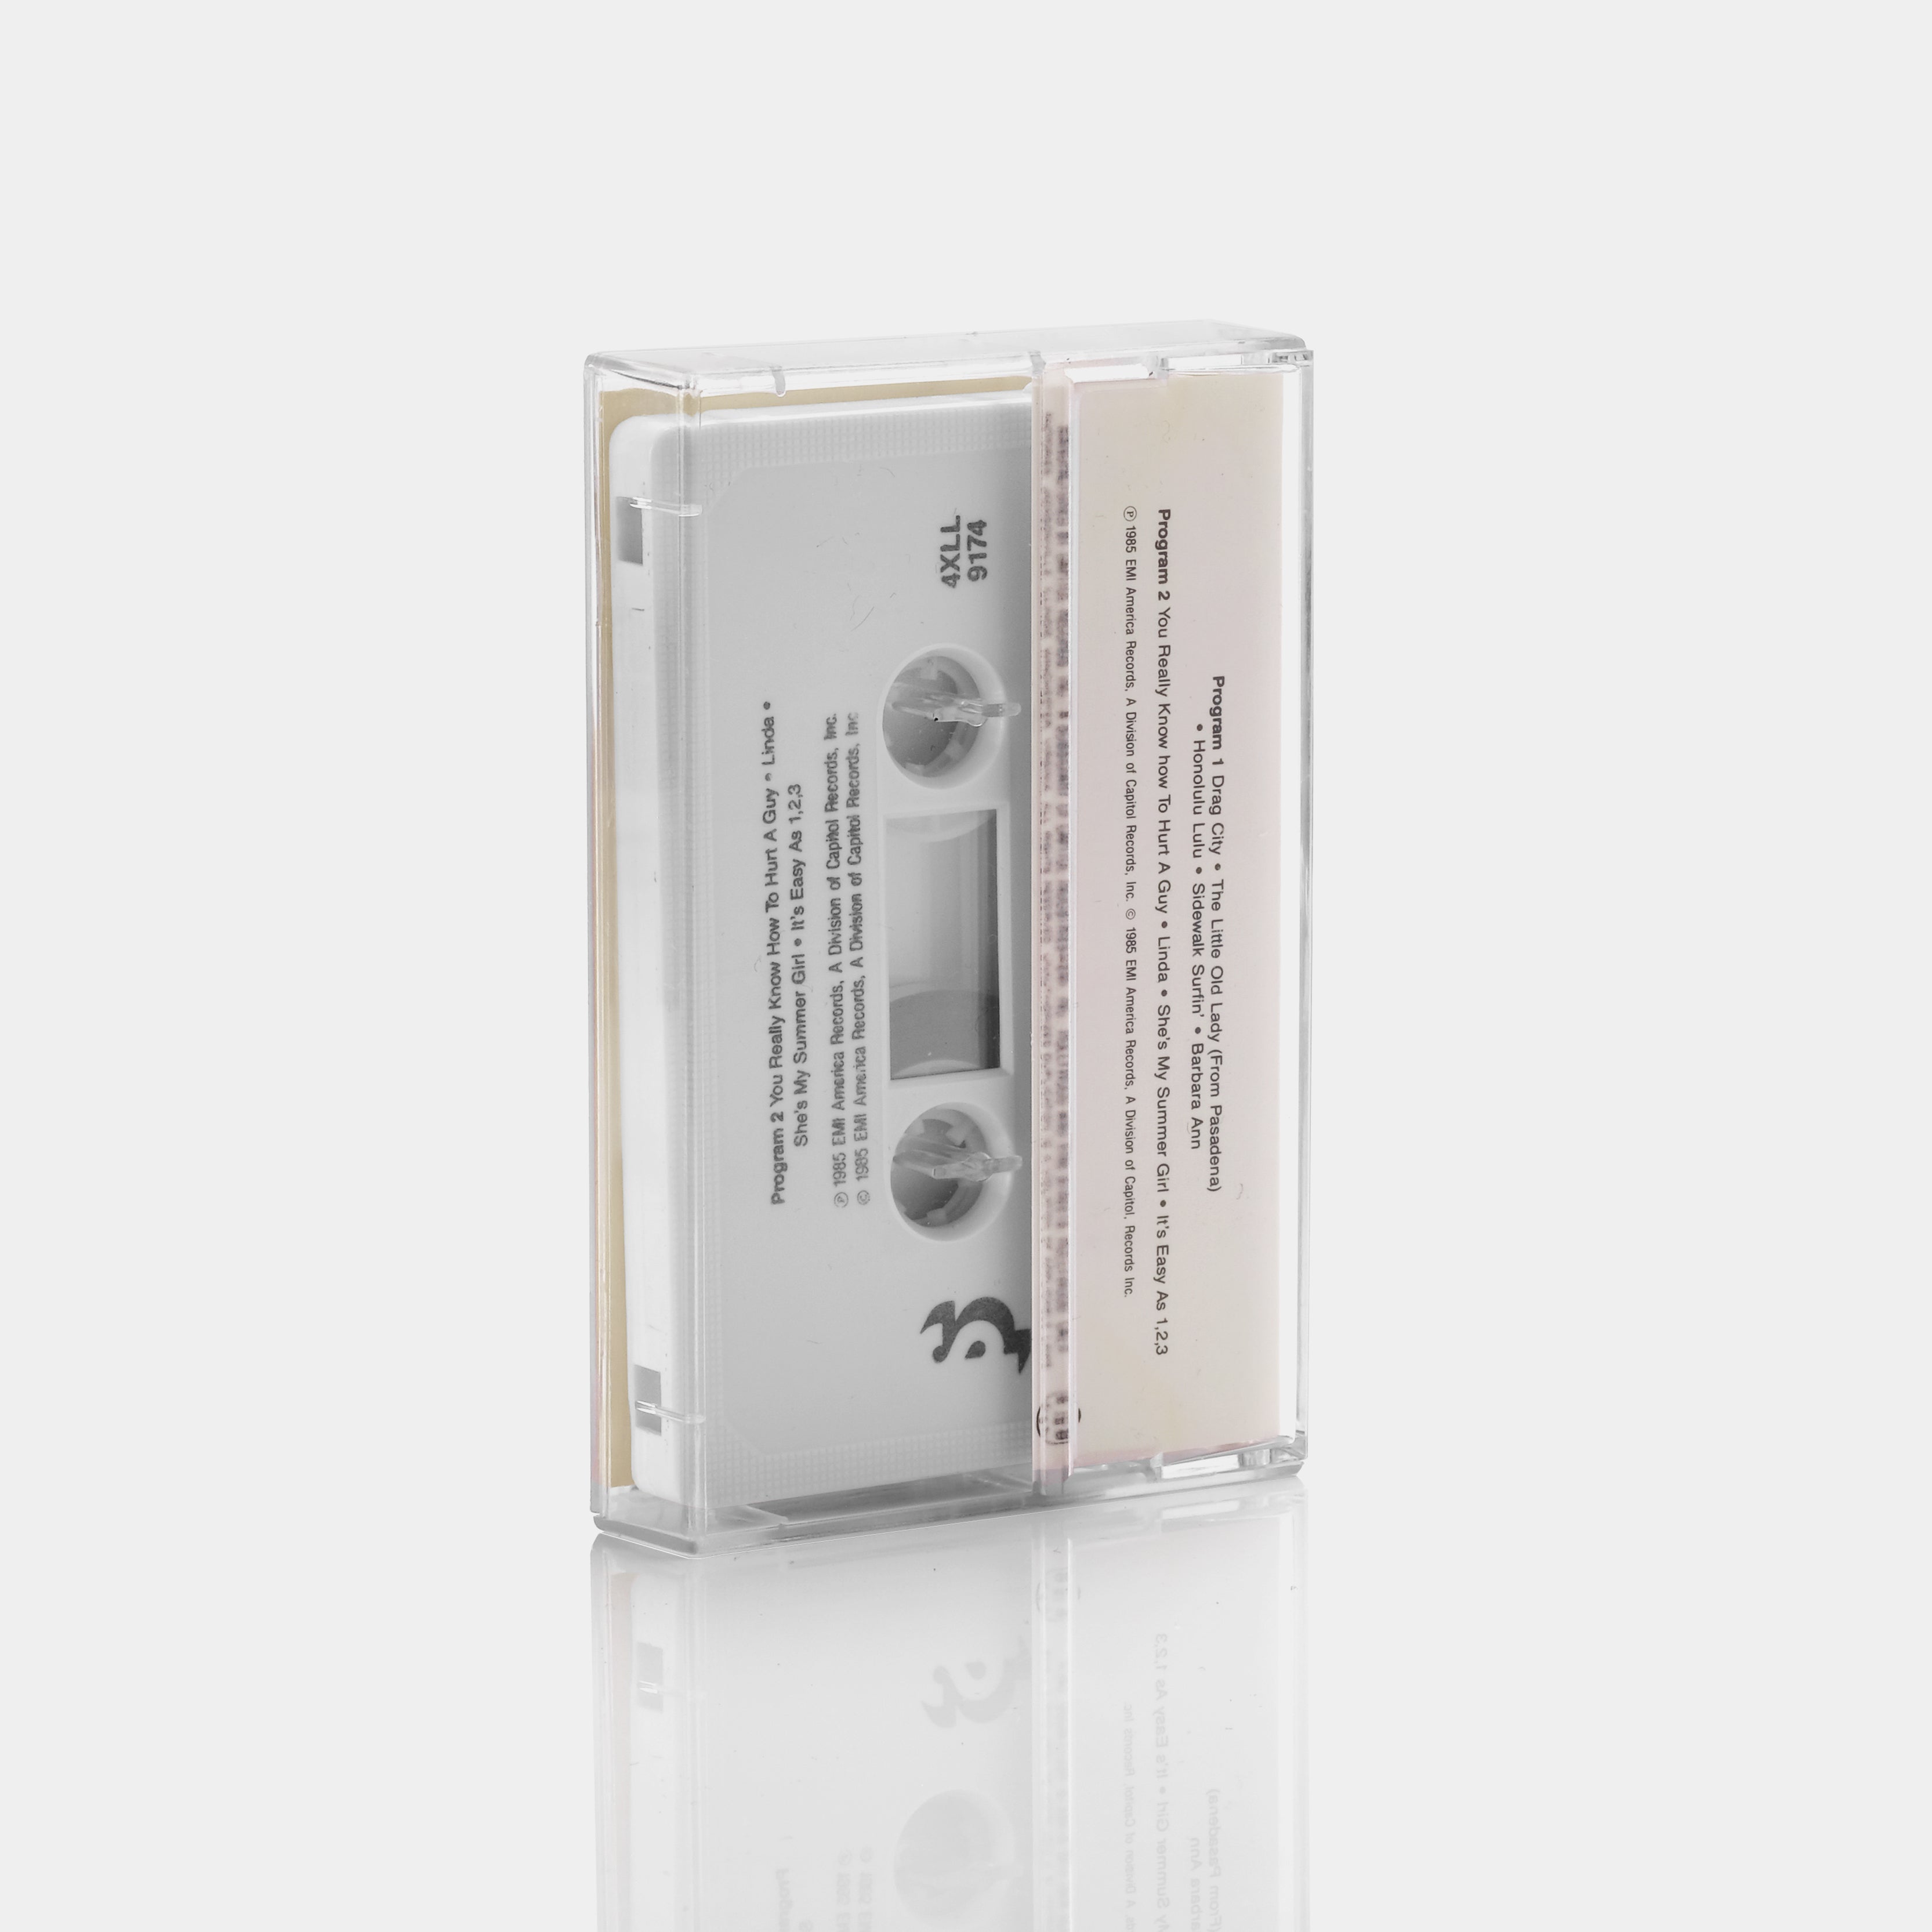 Golden Greats By Jan & Dean Cassette Tape